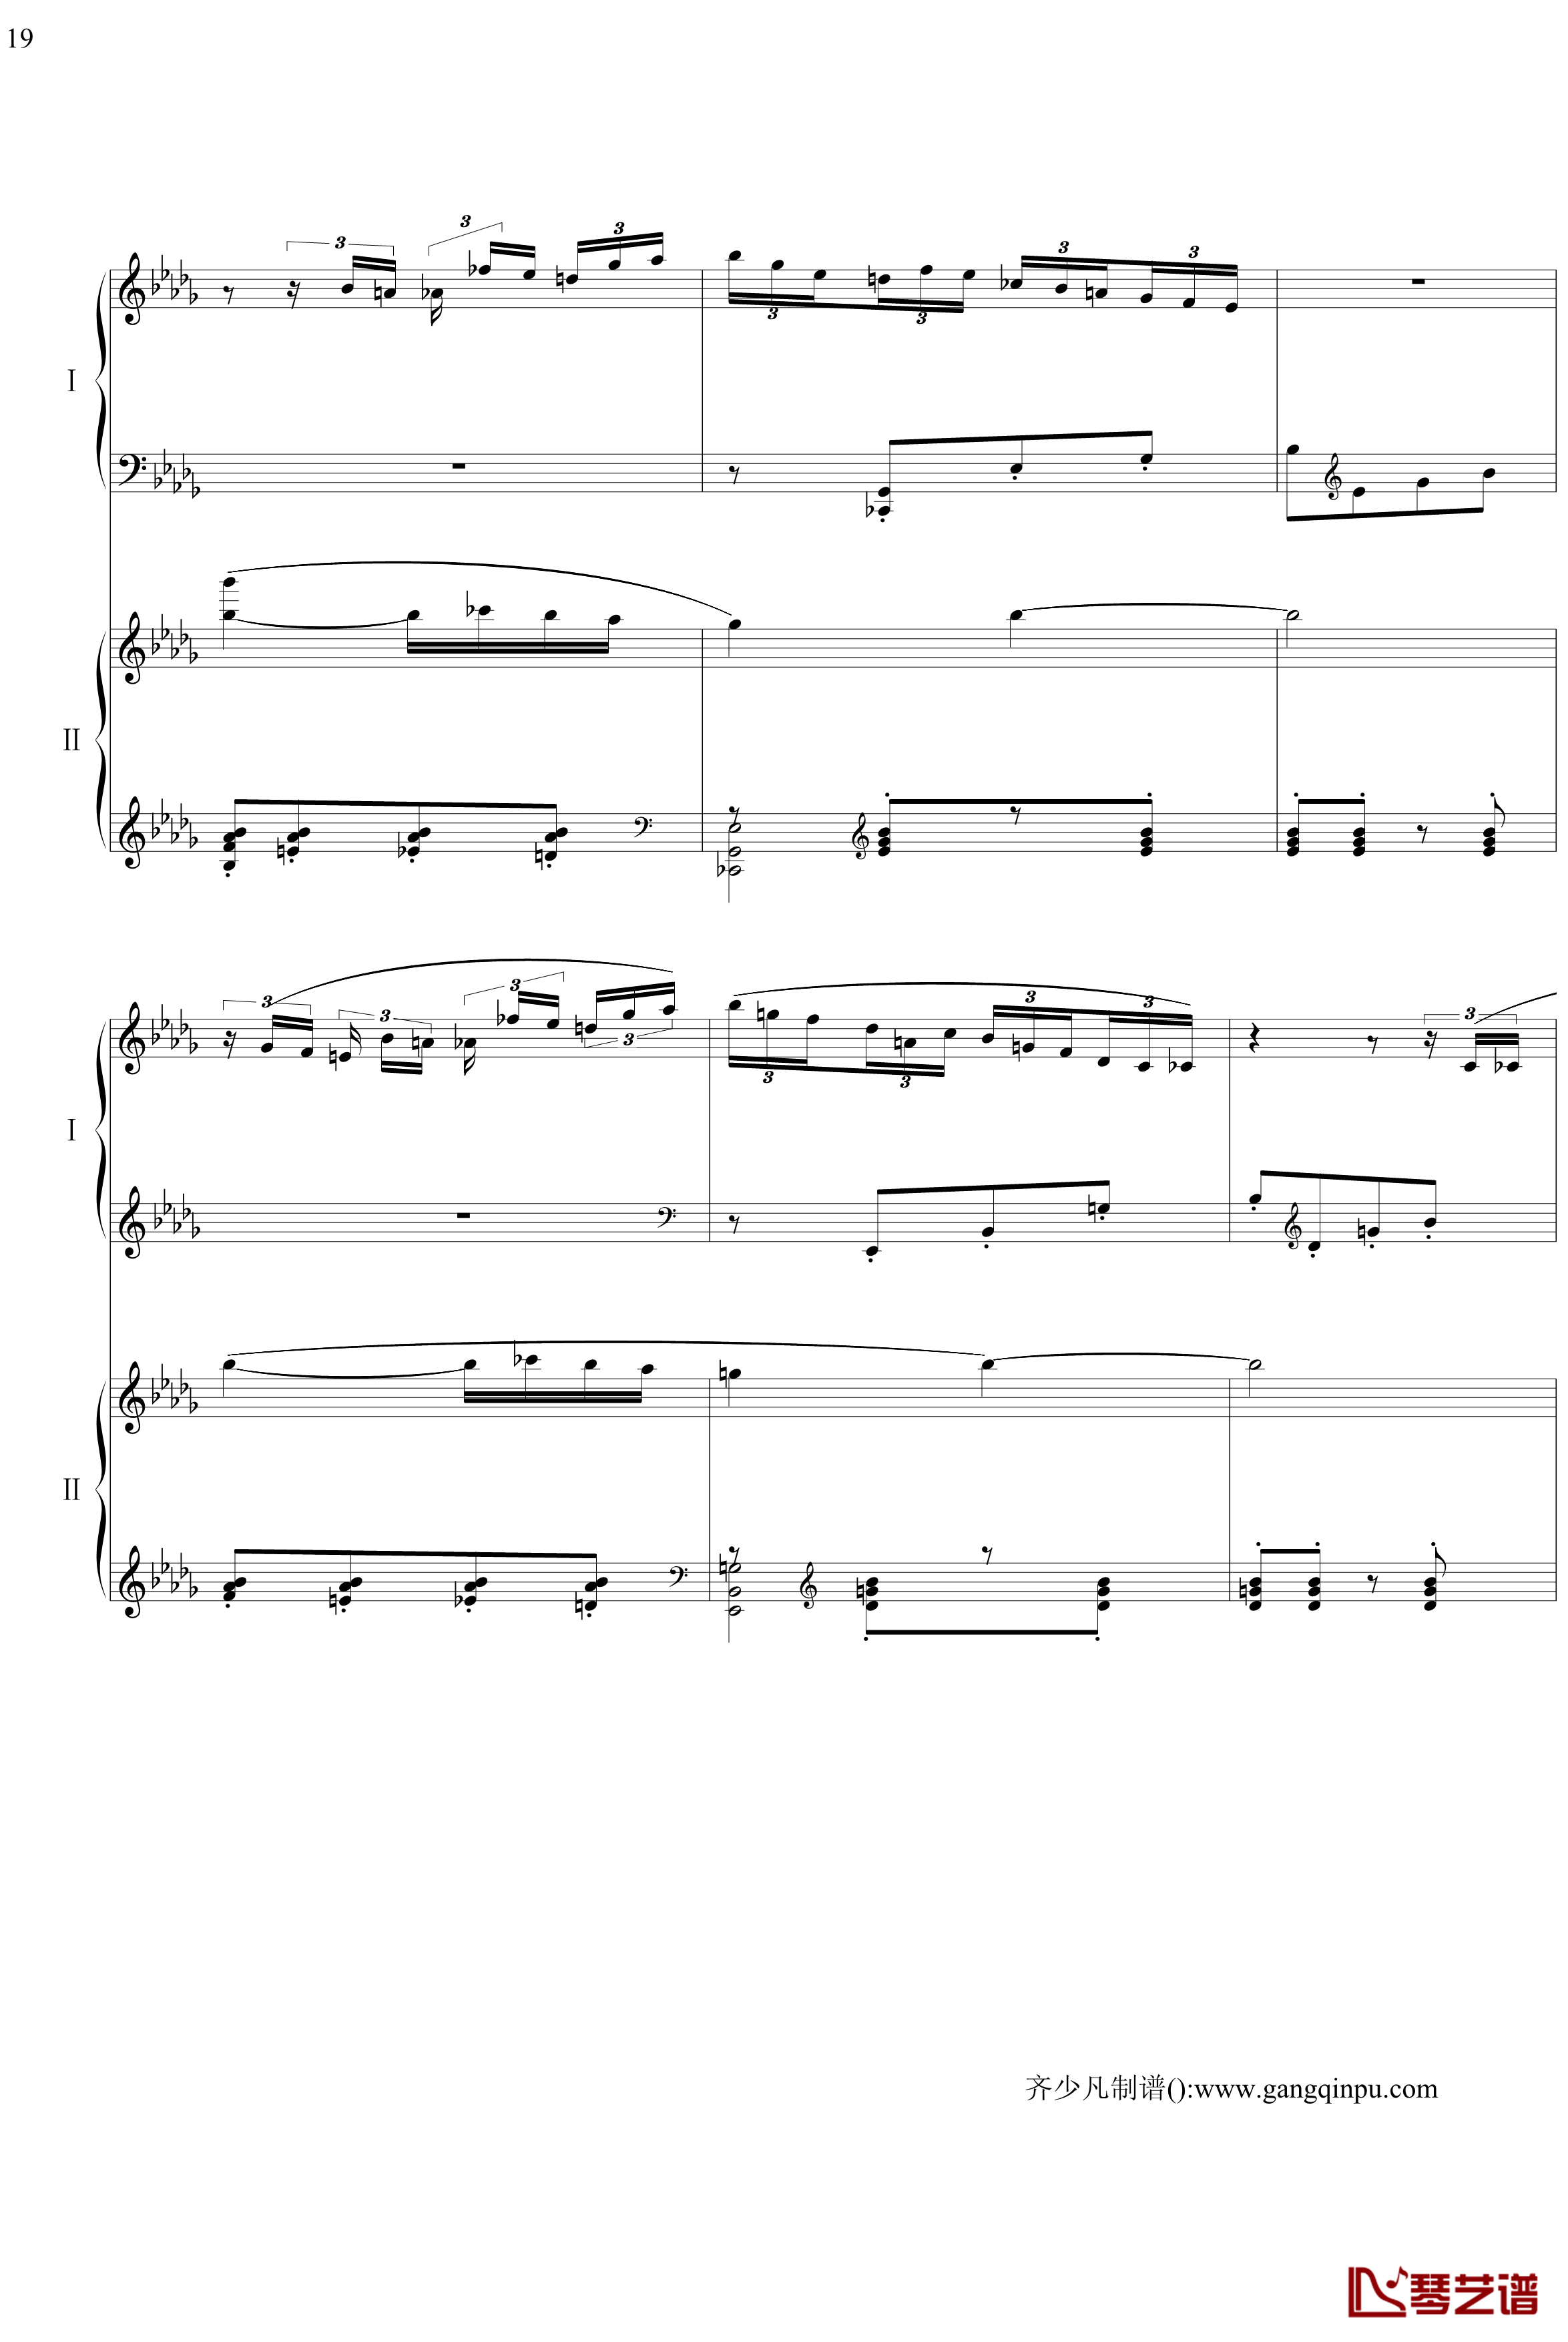 帕格尼尼主题狂想曲钢琴谱-11~18变奏-拉赫马尼若夫19